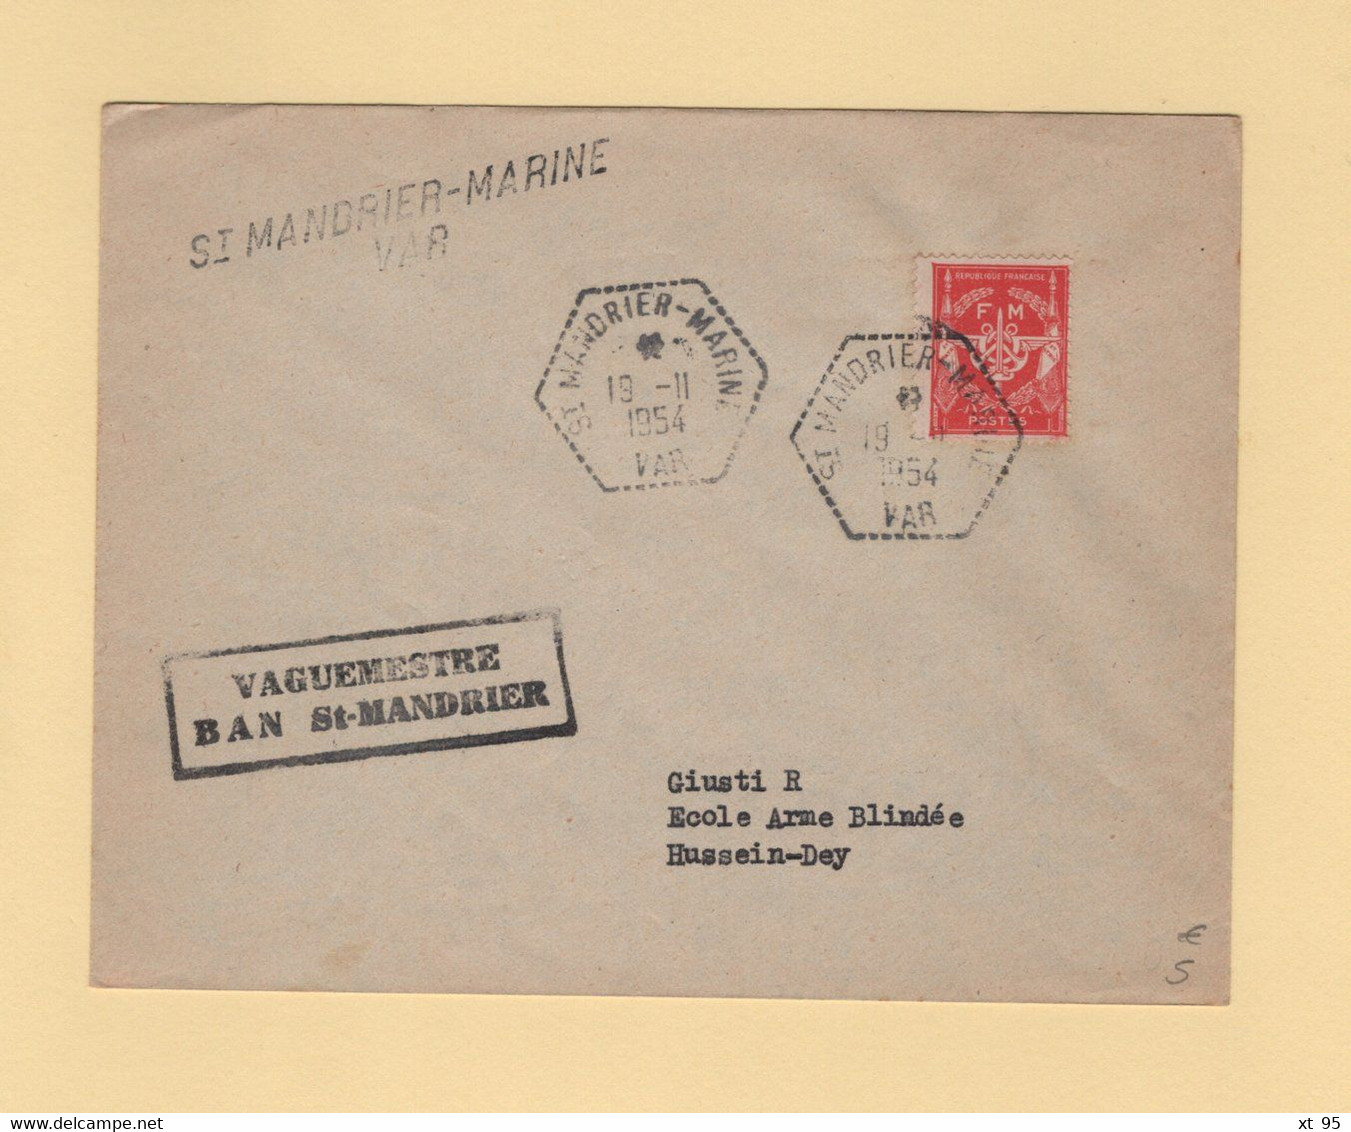 St Mandrier Marine - Var - 19-11-1954 - Vaguemestre BAN St Mandrier - Timbre FM - Timbres De Franchise Militaire